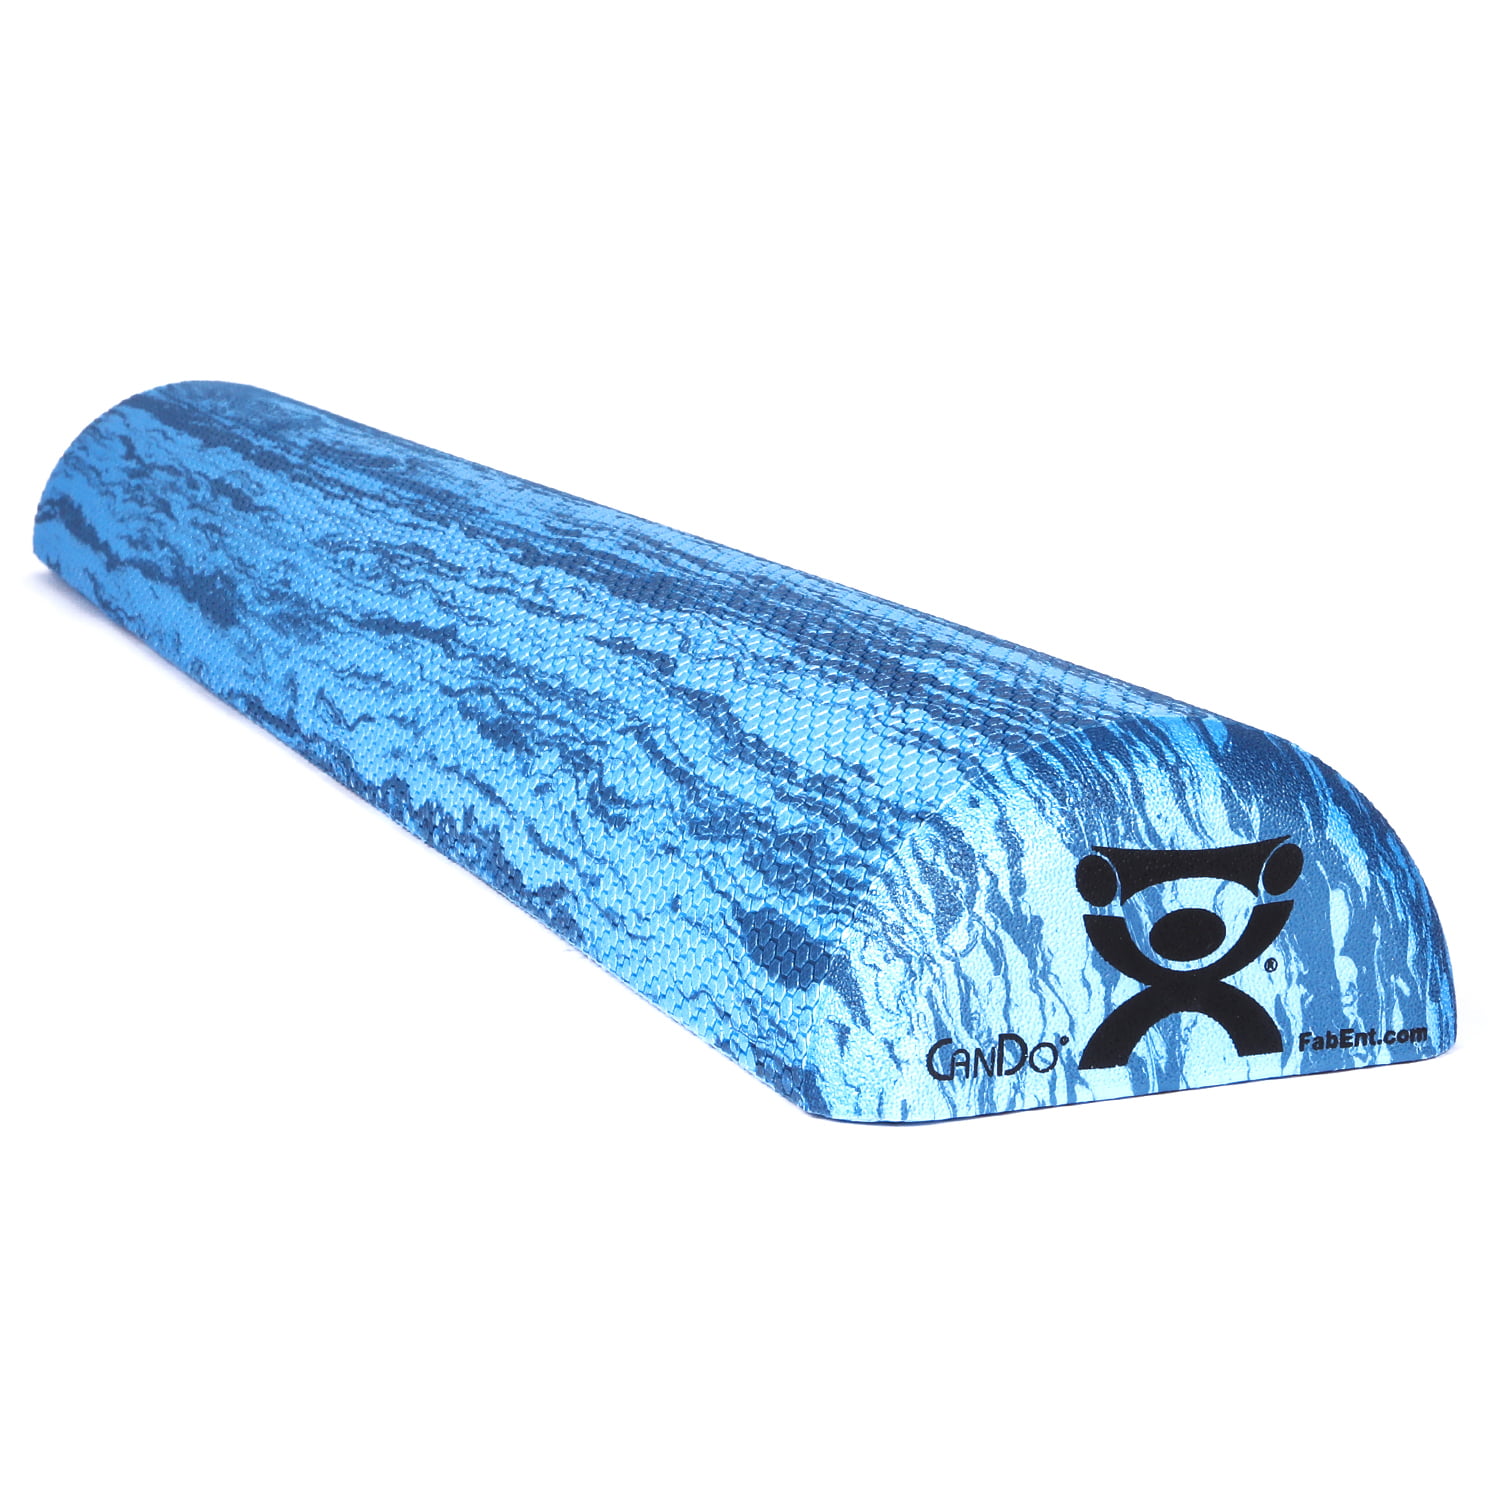 Foam Roller Muscle Deep Tissue Massage Blue 6" X 24" 